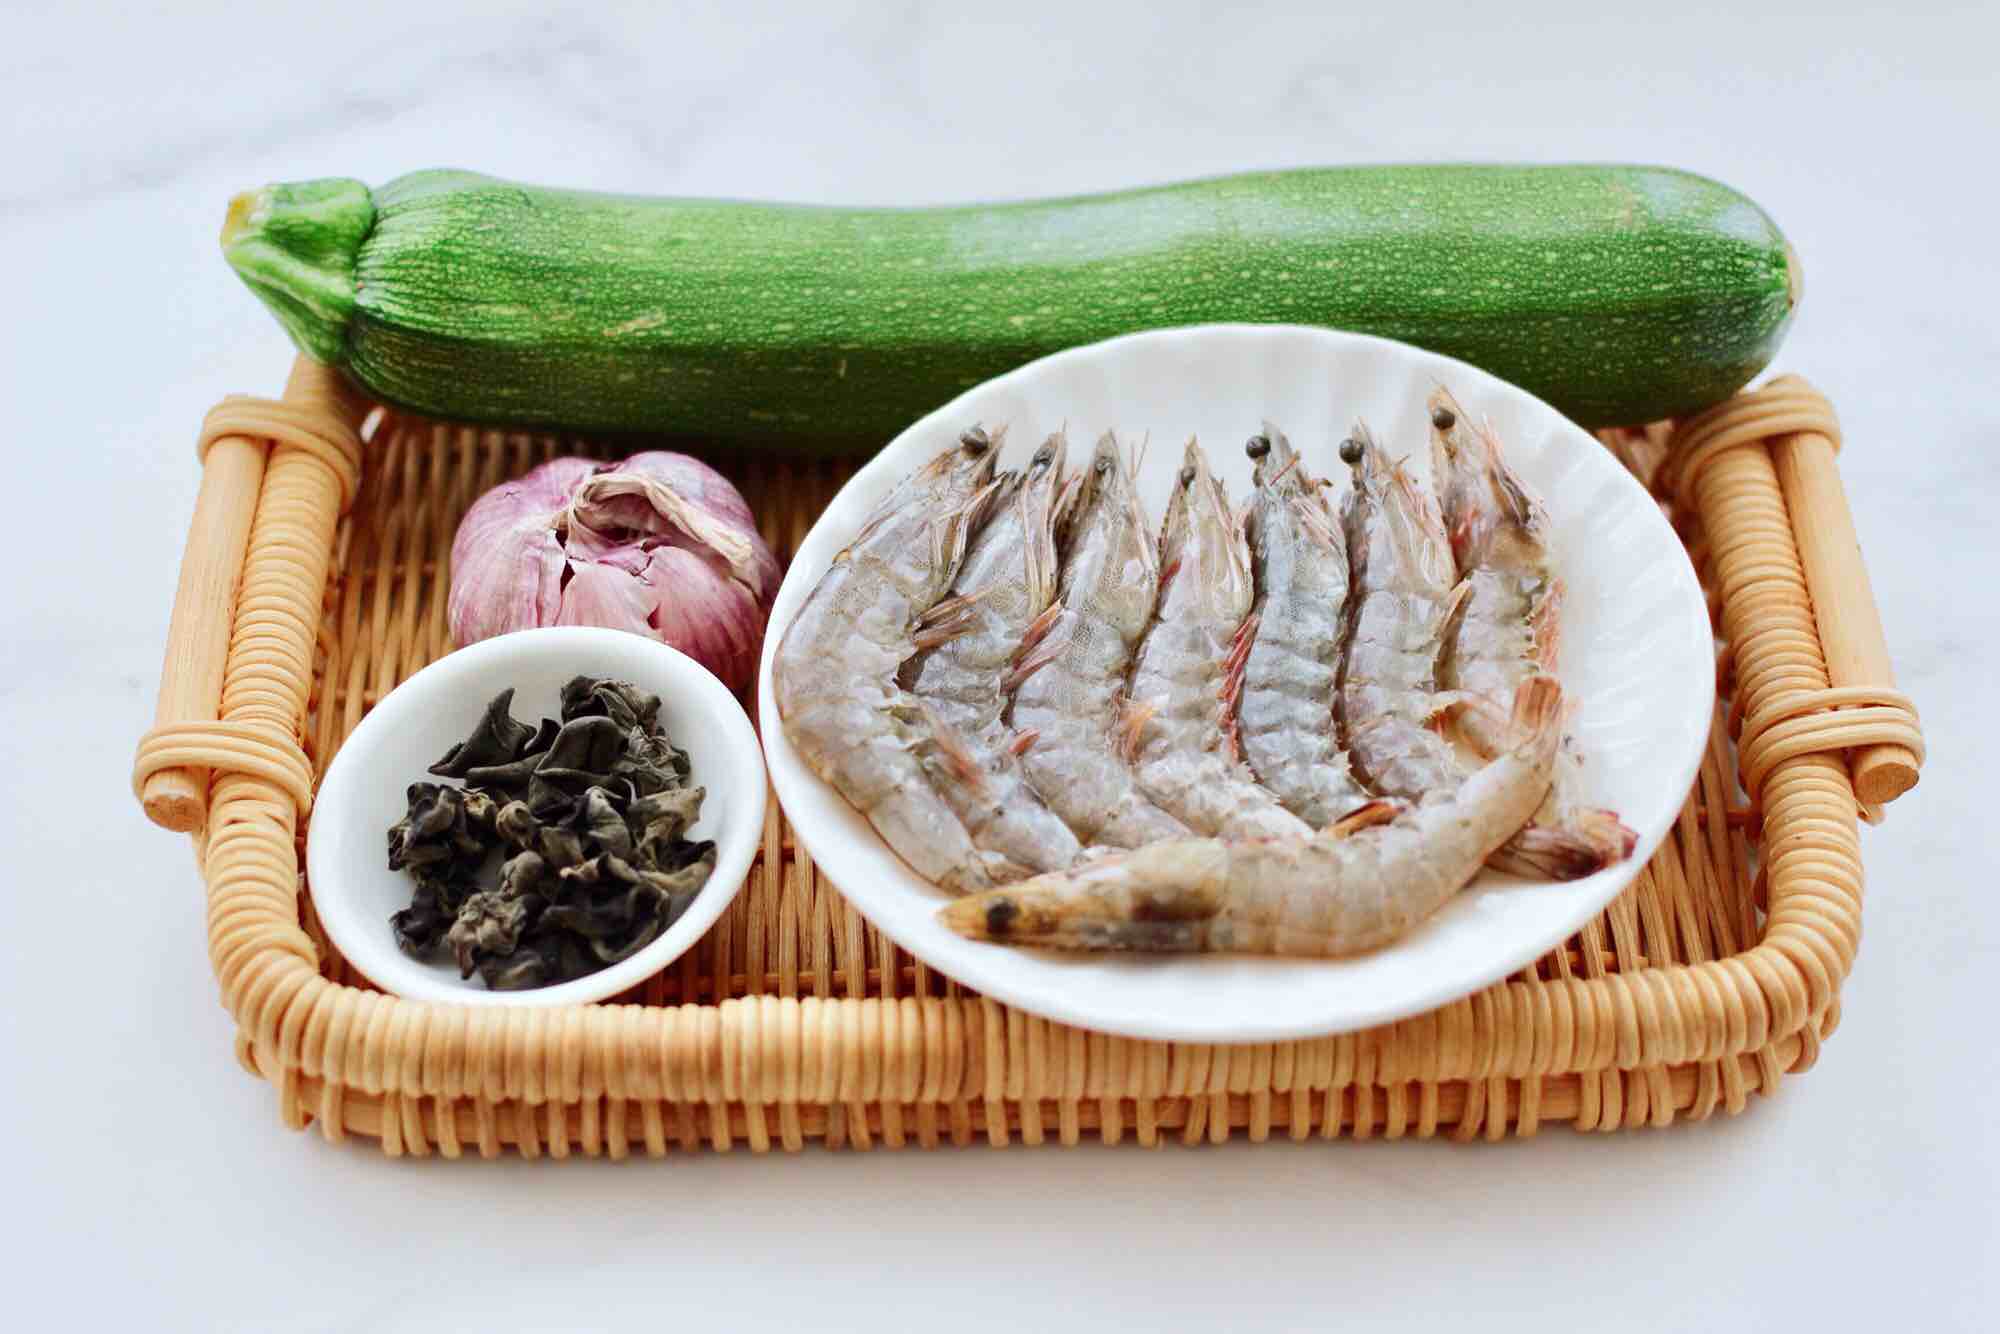 Stir-fried Shrimp with Horn Melon Fungus recipe